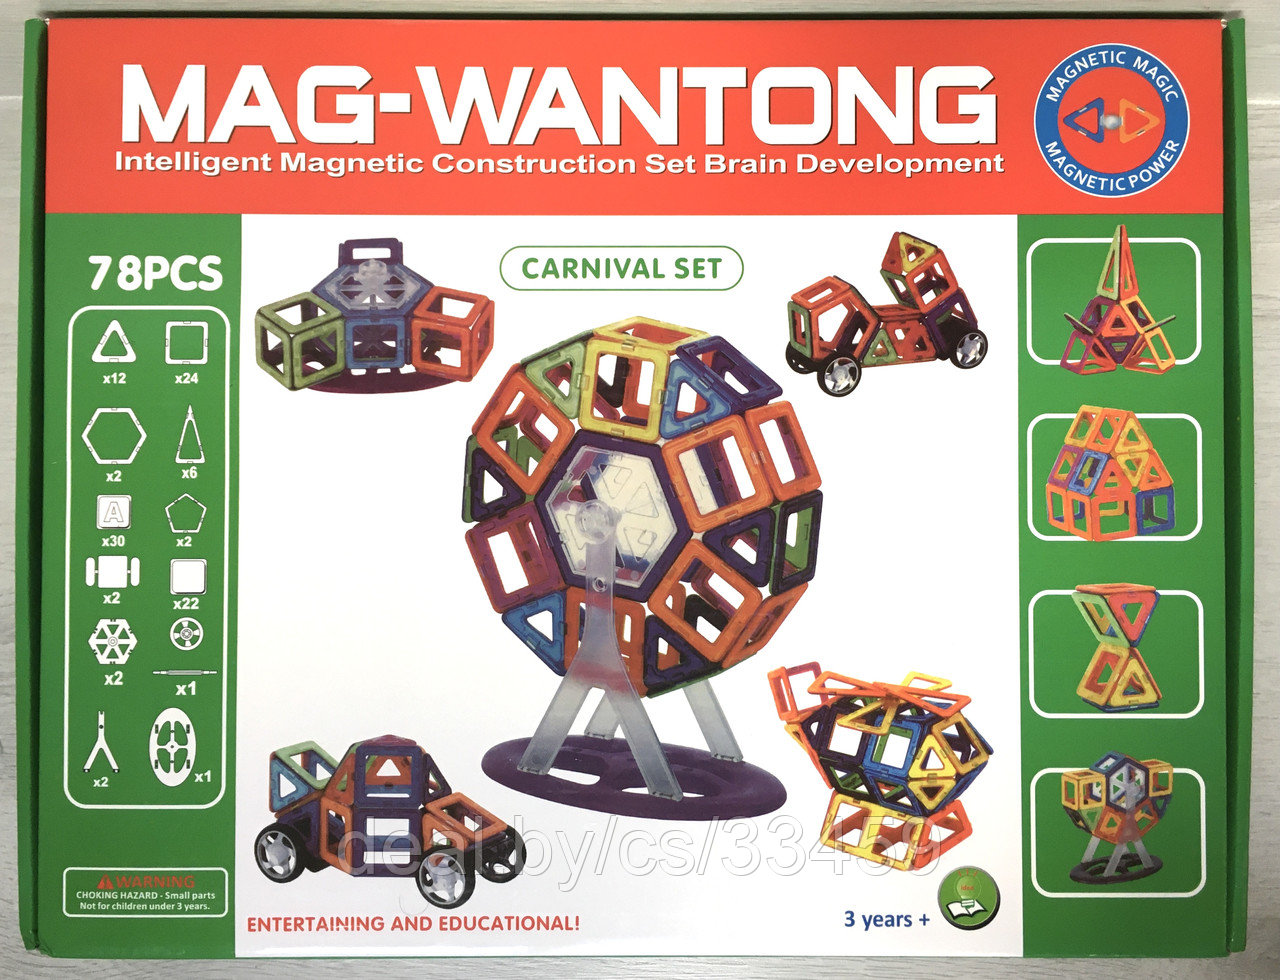 Конструктор магнитный Mag-Building (аналог Magformers конструктор ) 78 деталей